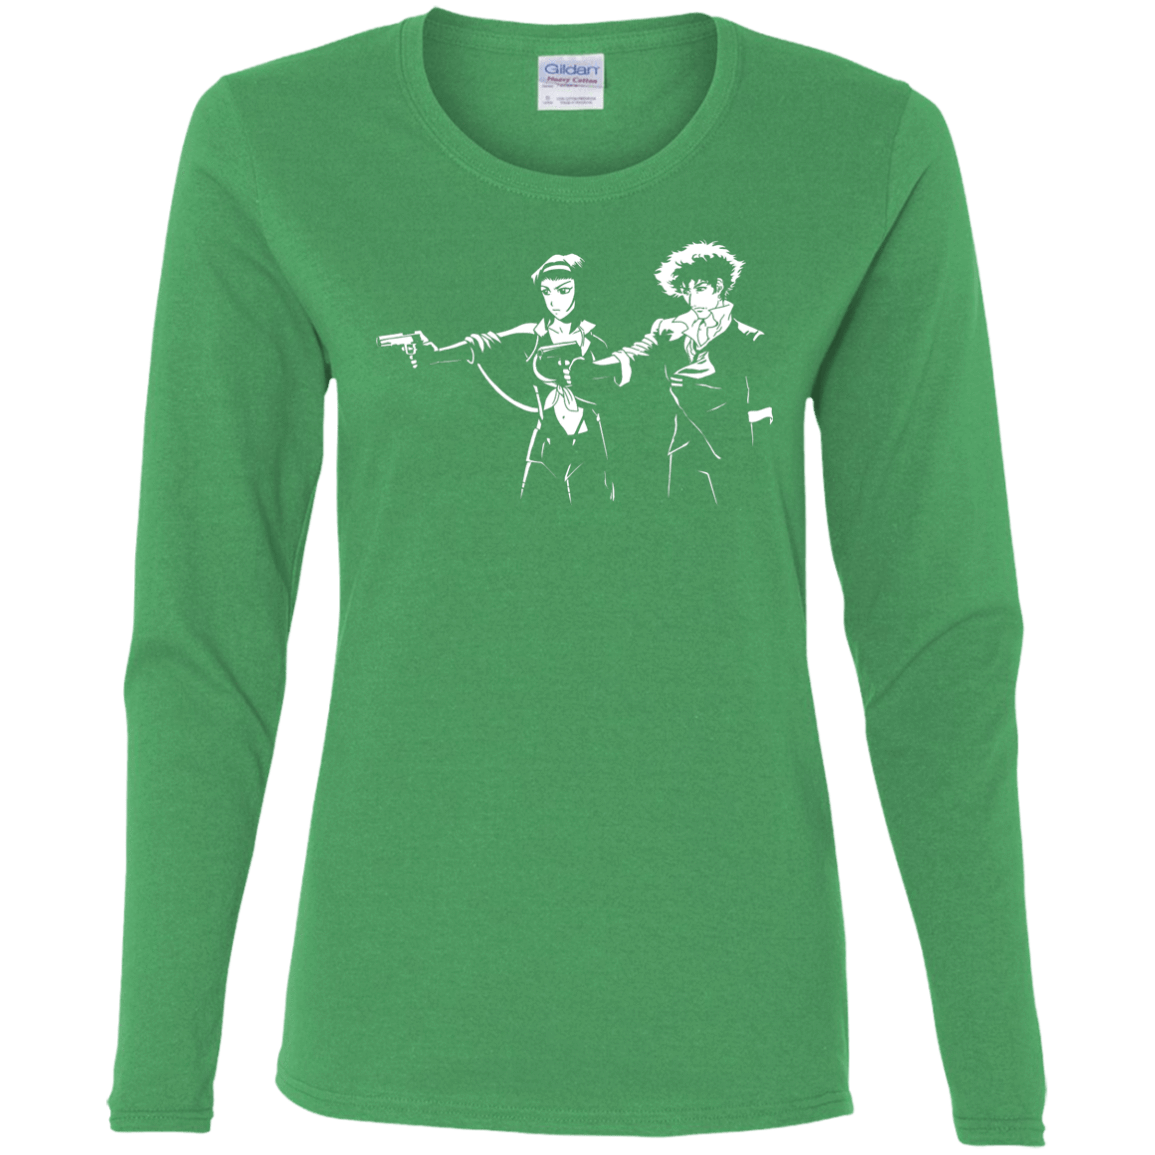 T-Shirts Irish Green / S Cowboy Fiction Women's Long Sleeve T-Shirt